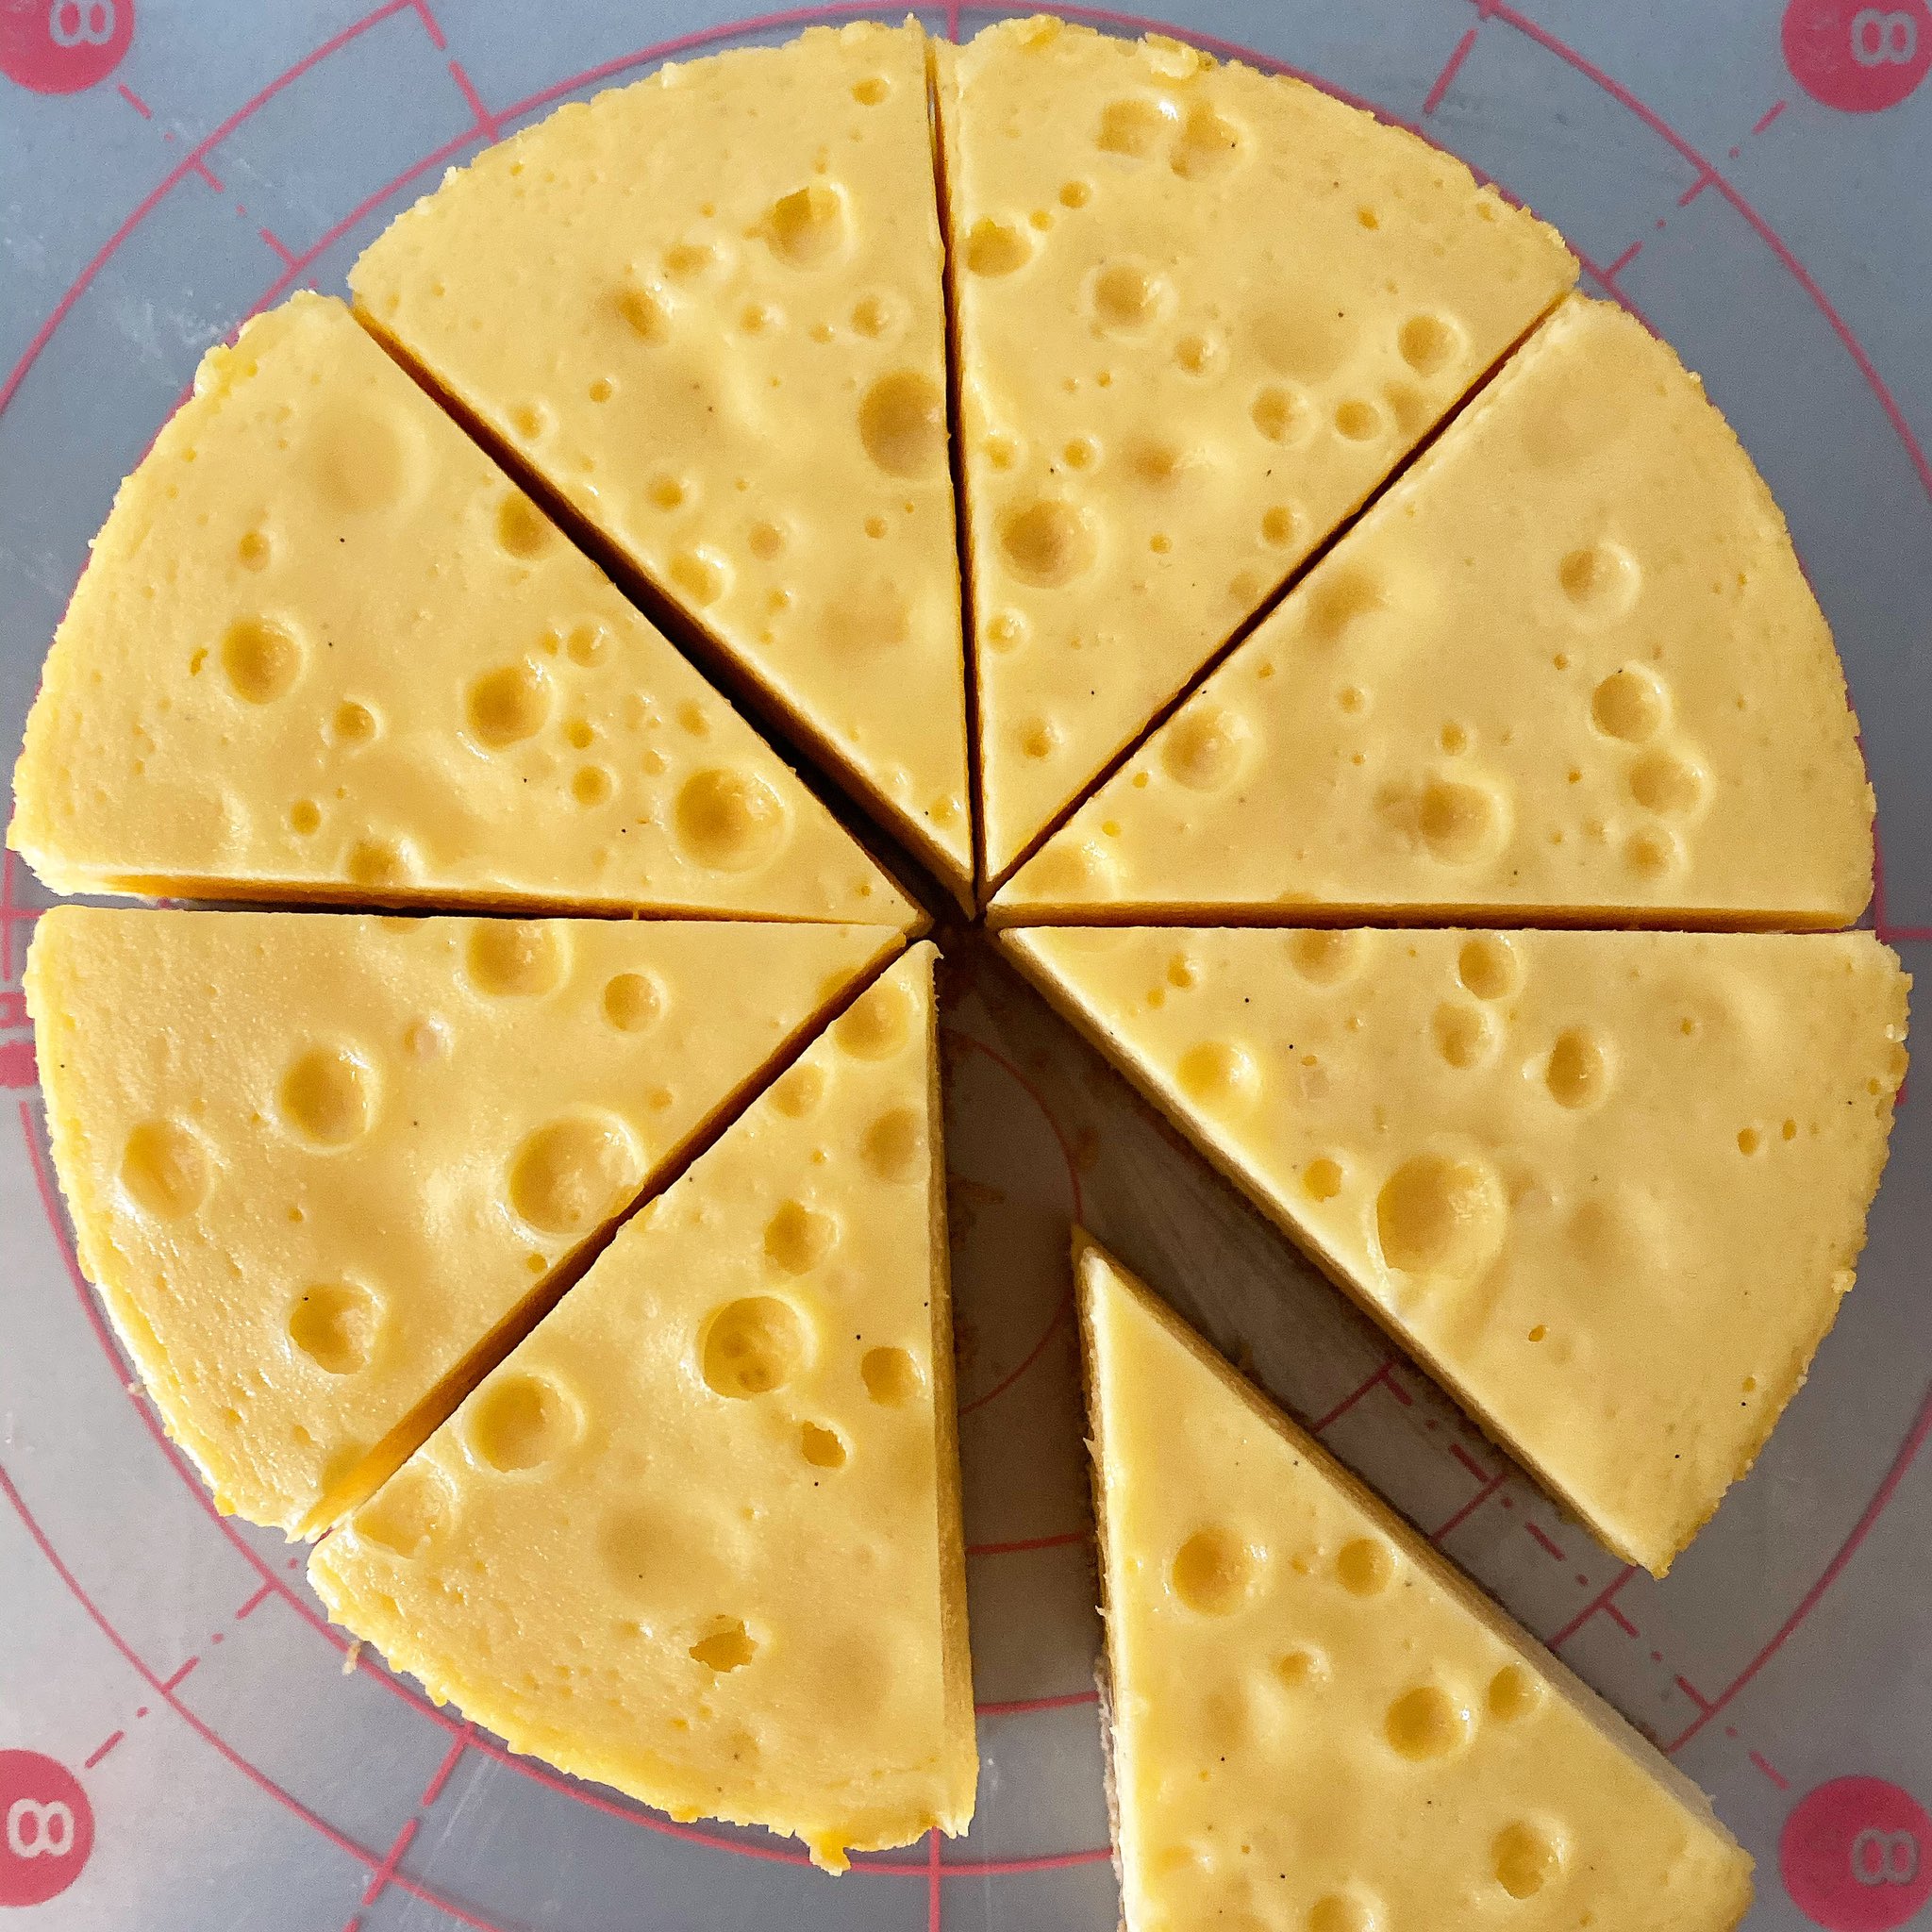 ぐるりと 通常は15cmのホールのチーズケーキ を6カットにしていますが 阪神百貨店梅田本店さんの11月13日 19日までのイベントではホールケーキを8カットでカットしてます なので1カットが 小さいサイズになります 小さいですが心を込めてお作りさせて